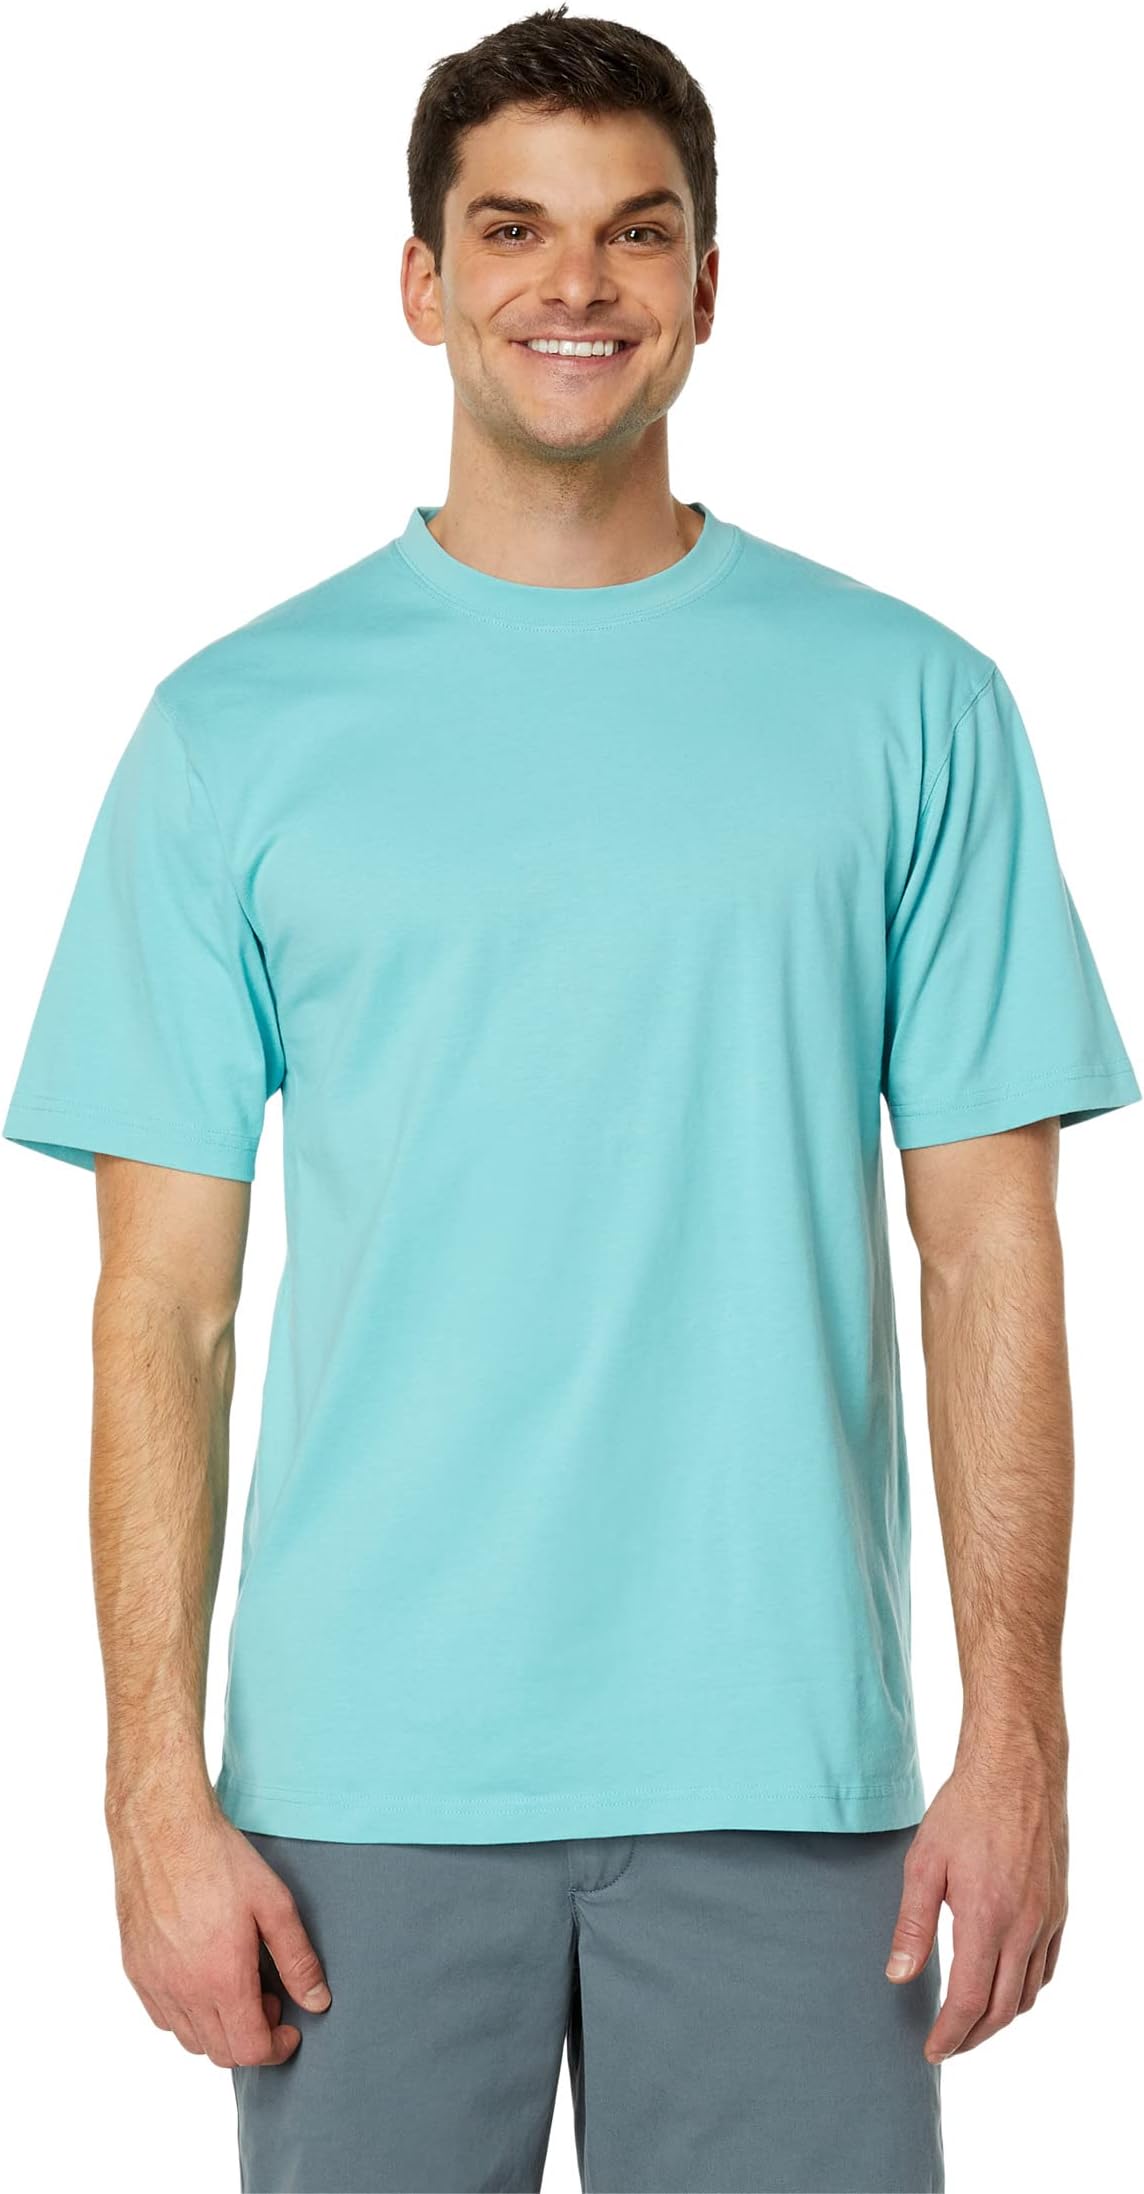 Беззаботная неусадочная футболка без кармана с коротким рукавом L.L.Bean, цвет Sea Aqua aqua mare sea side